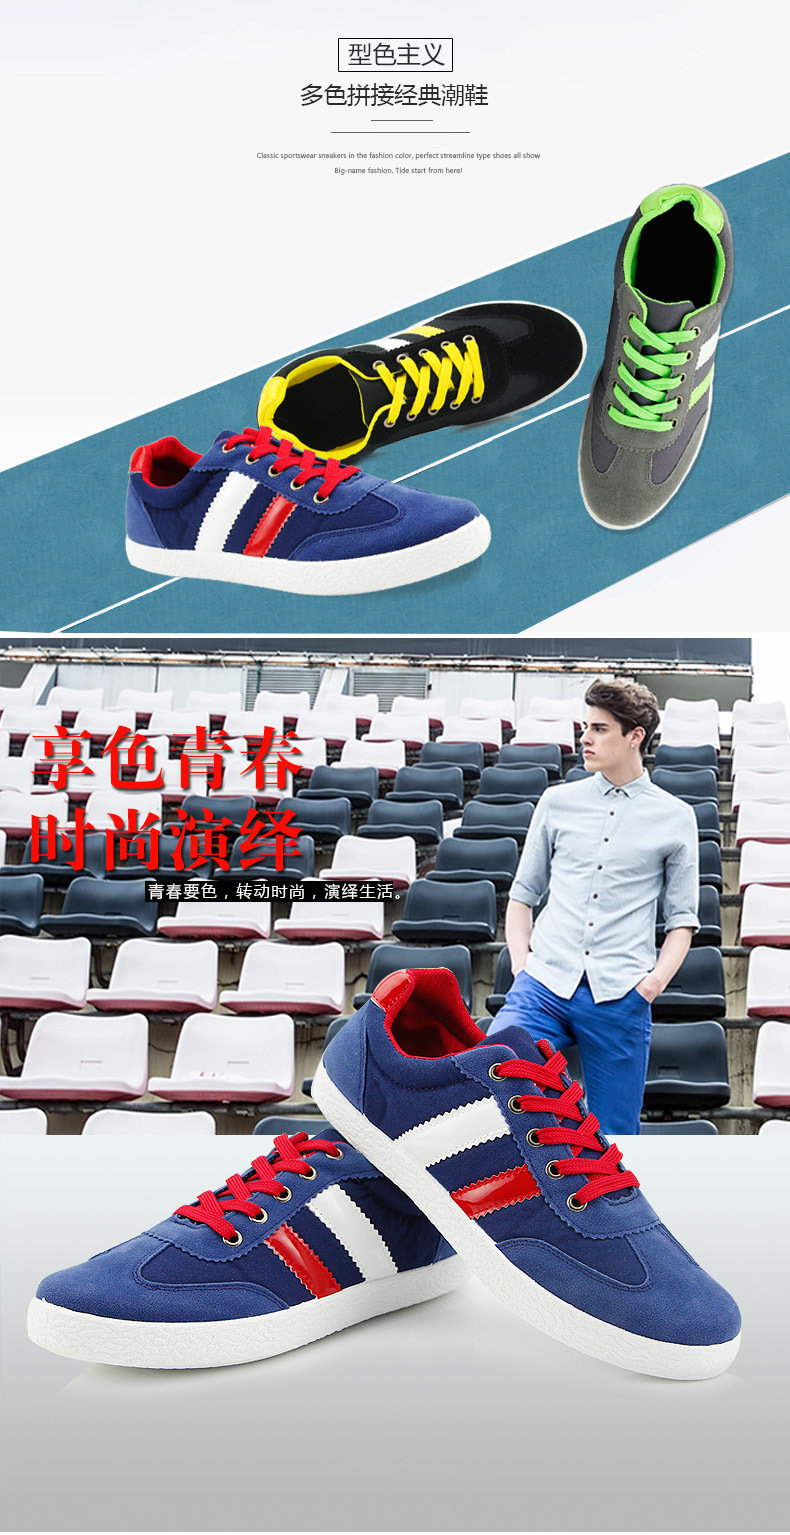 正品新款系带帮帆布鞋男鞋日常休闲韩版潮流鞋学生鞋平跟板鞋示例图2